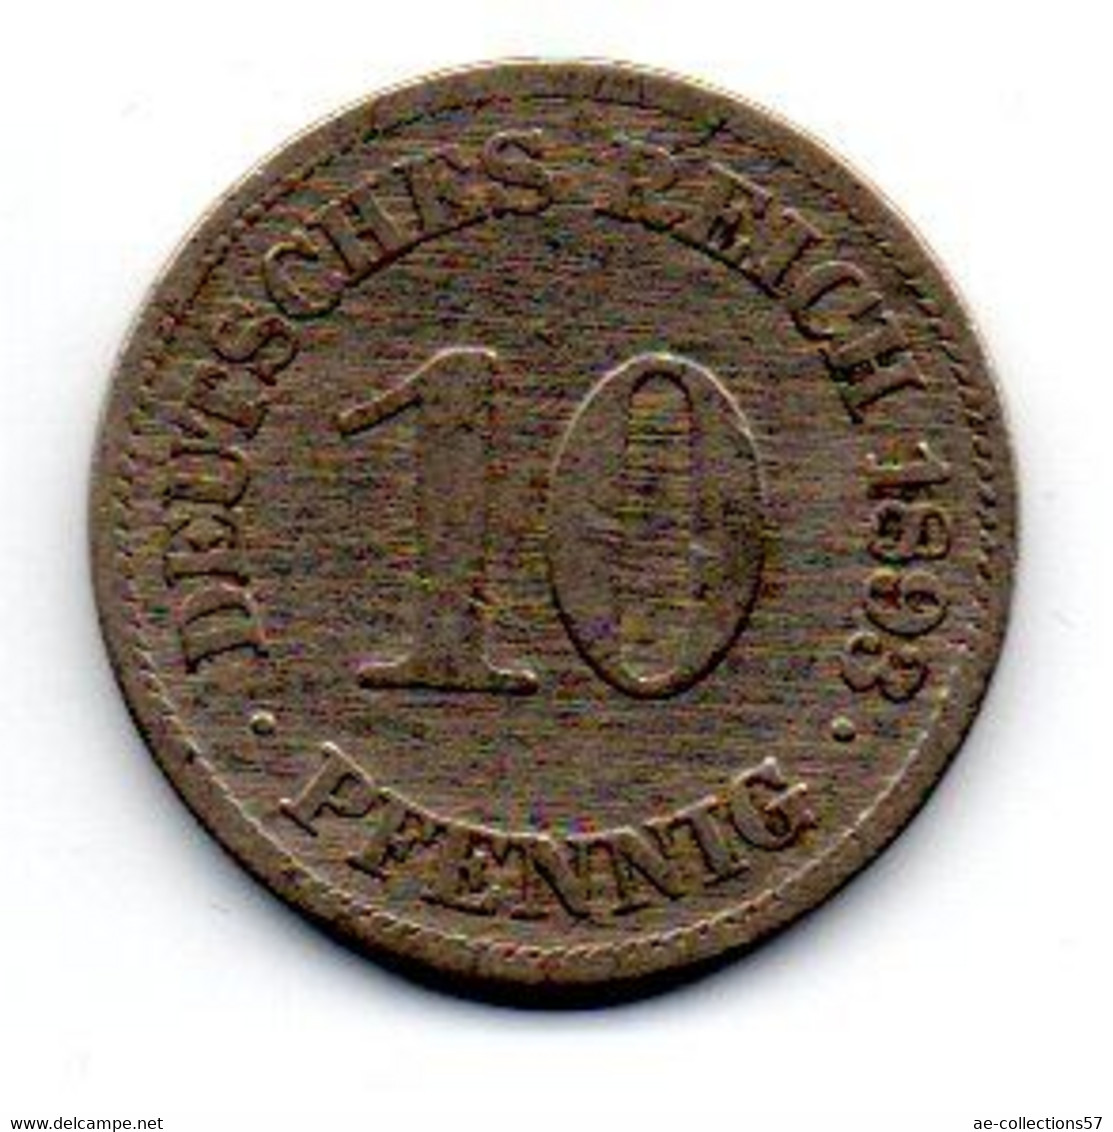 Allemagne -  10 Pfennig  1893 E TB - 10 Pfennig